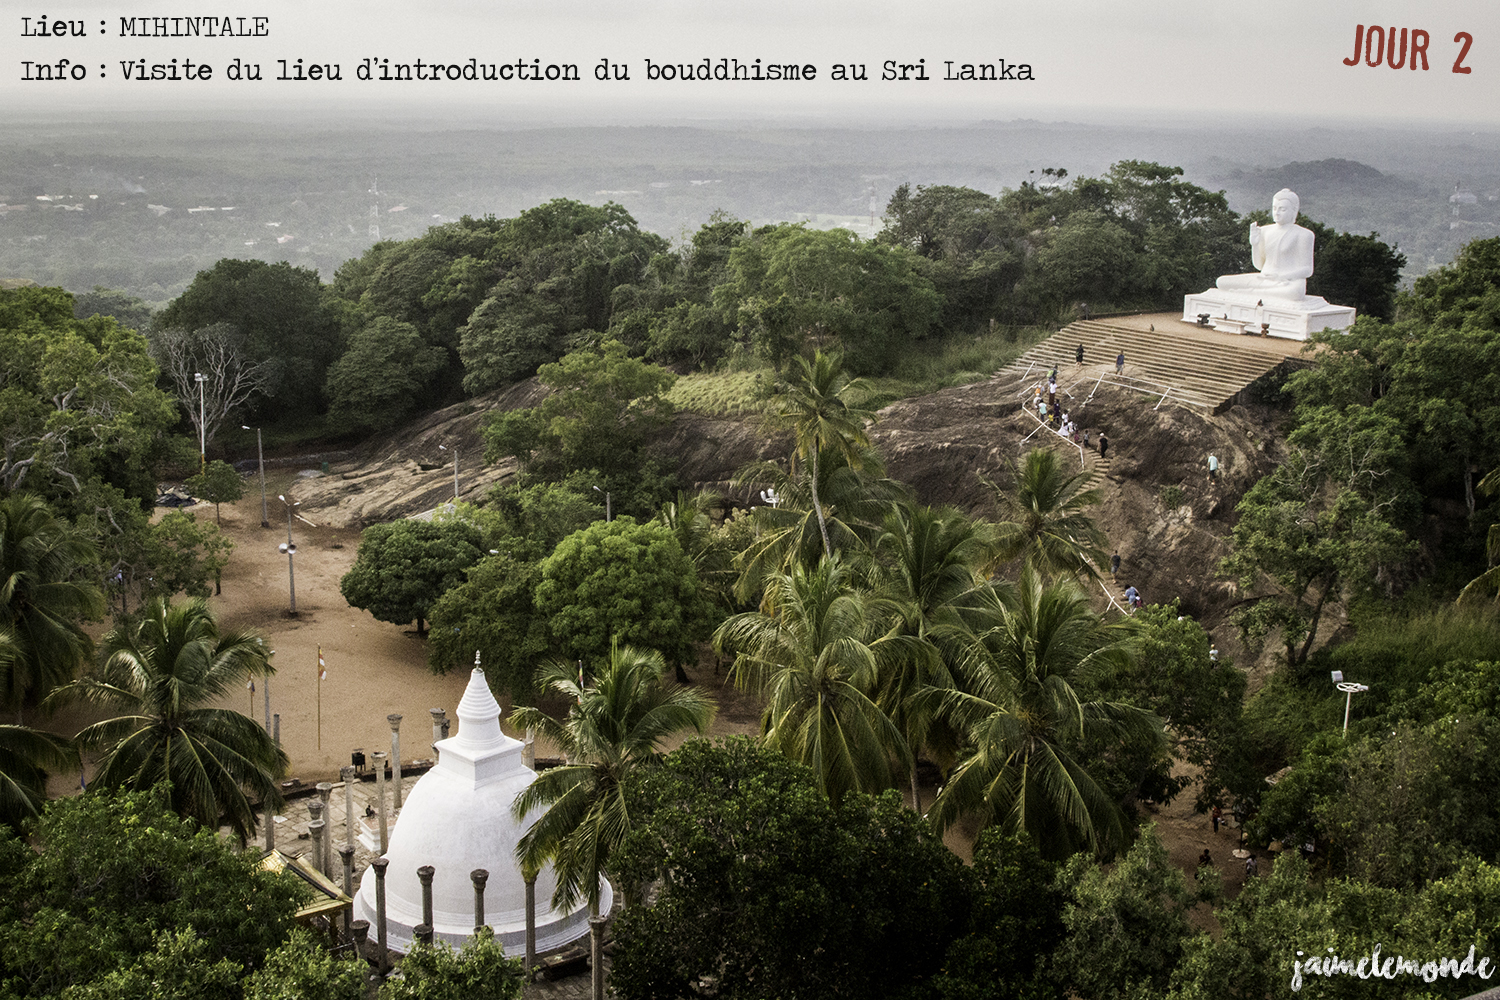 Voyage Sri Lanka - Itinéraire Jour 2 - 11 Mihintale - Visite des temples - ©jaimelemonde